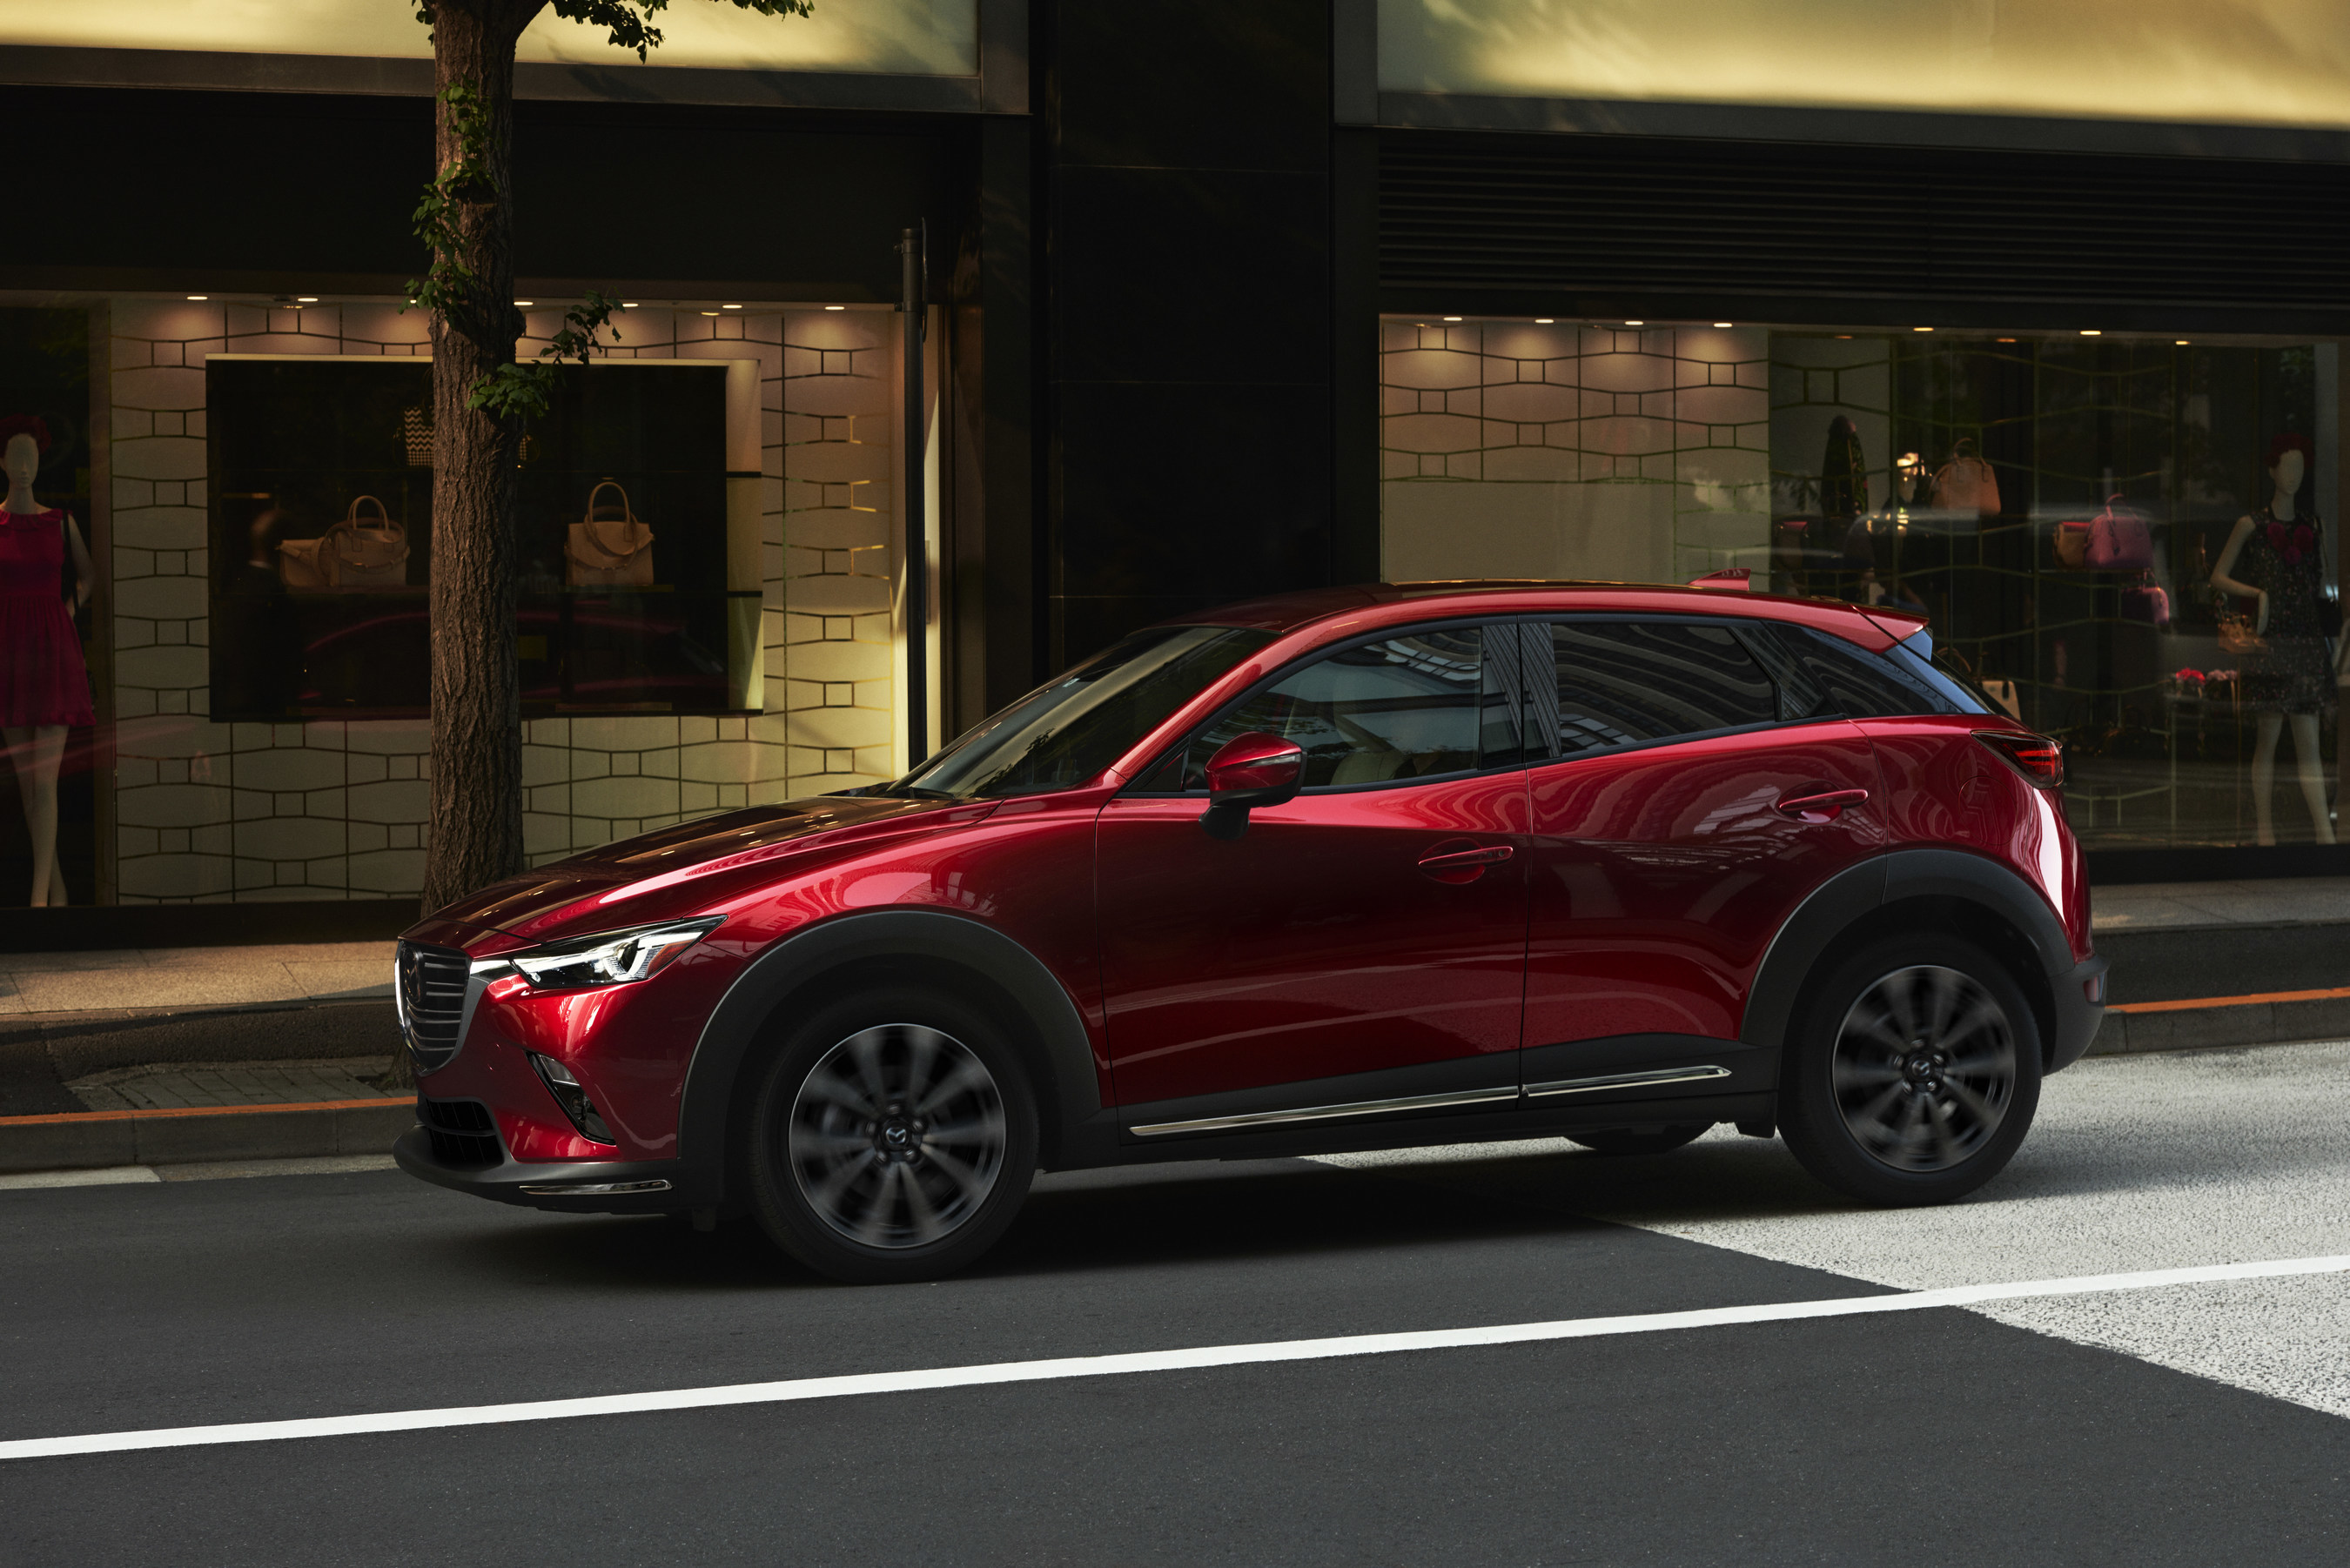 2019 Mazda CX3 Compact Dimensions, Big Ambitions May